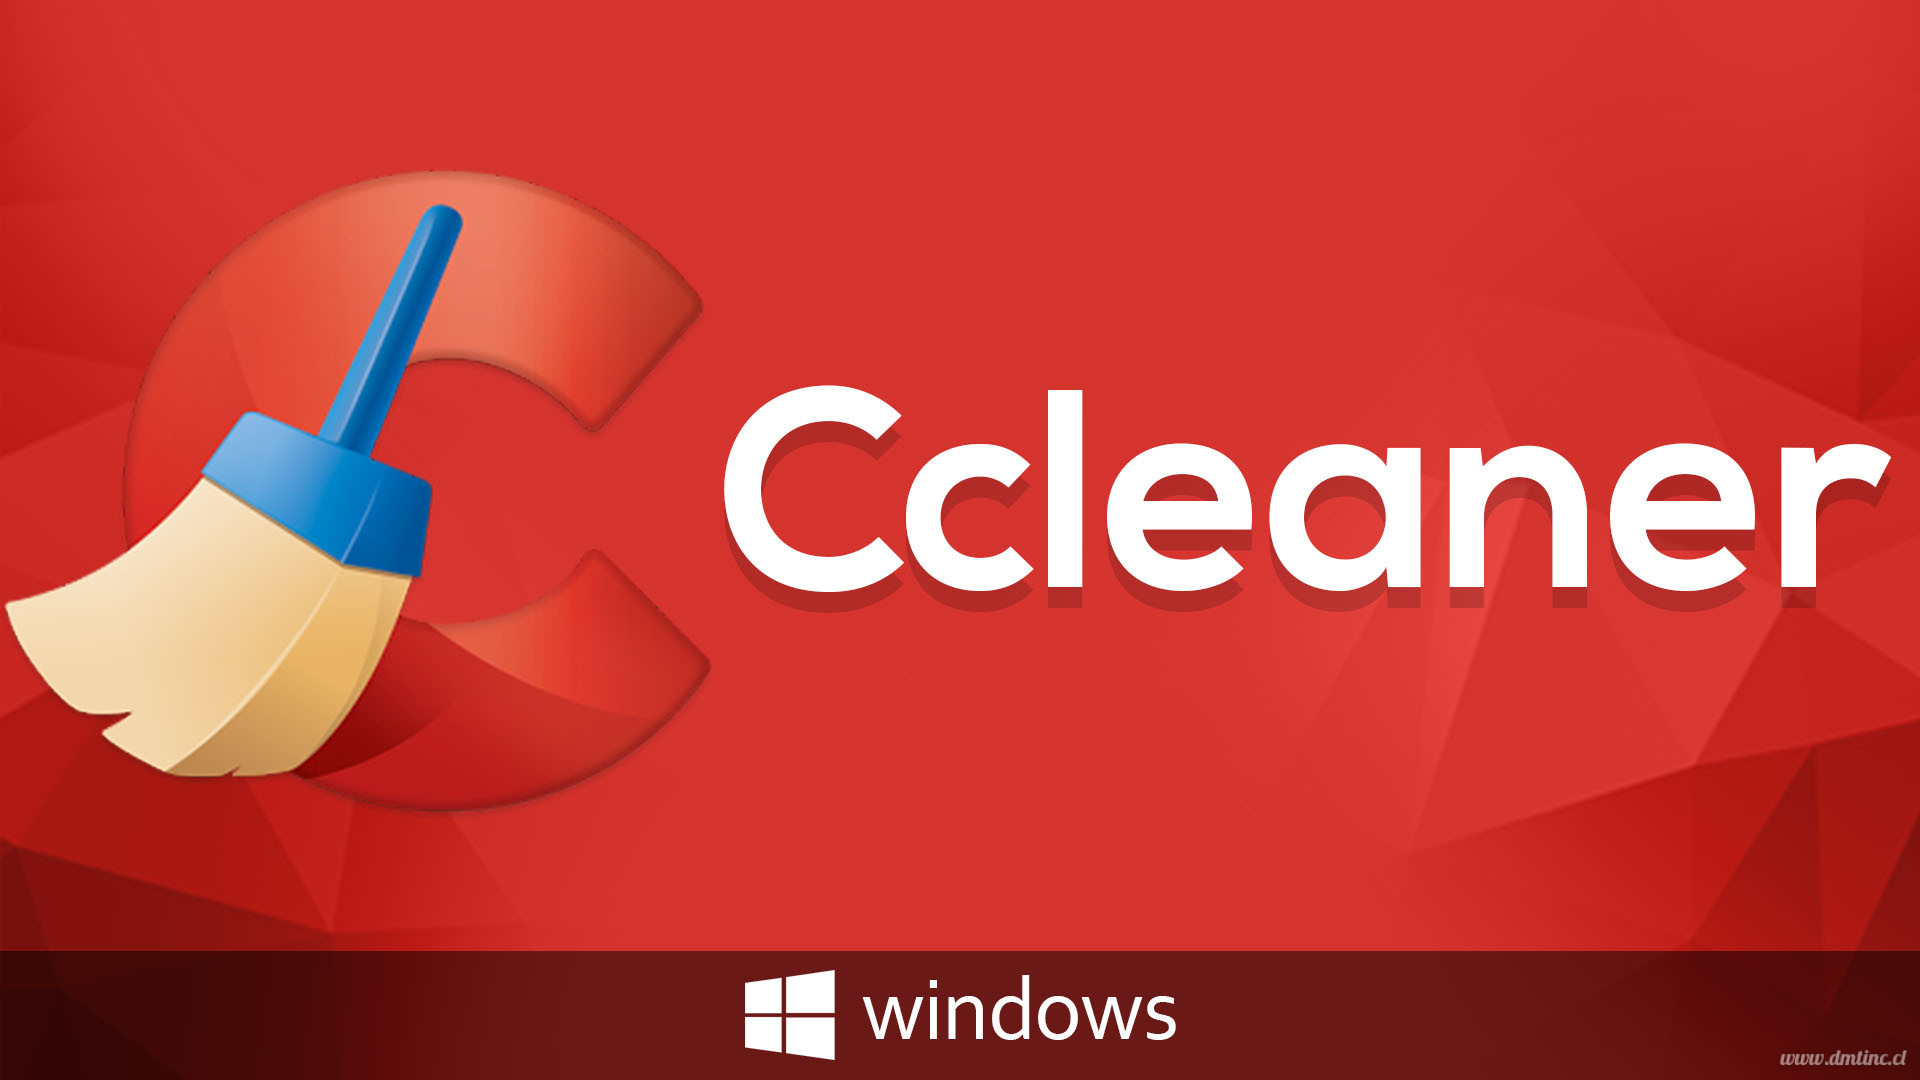 ccleaner mega download